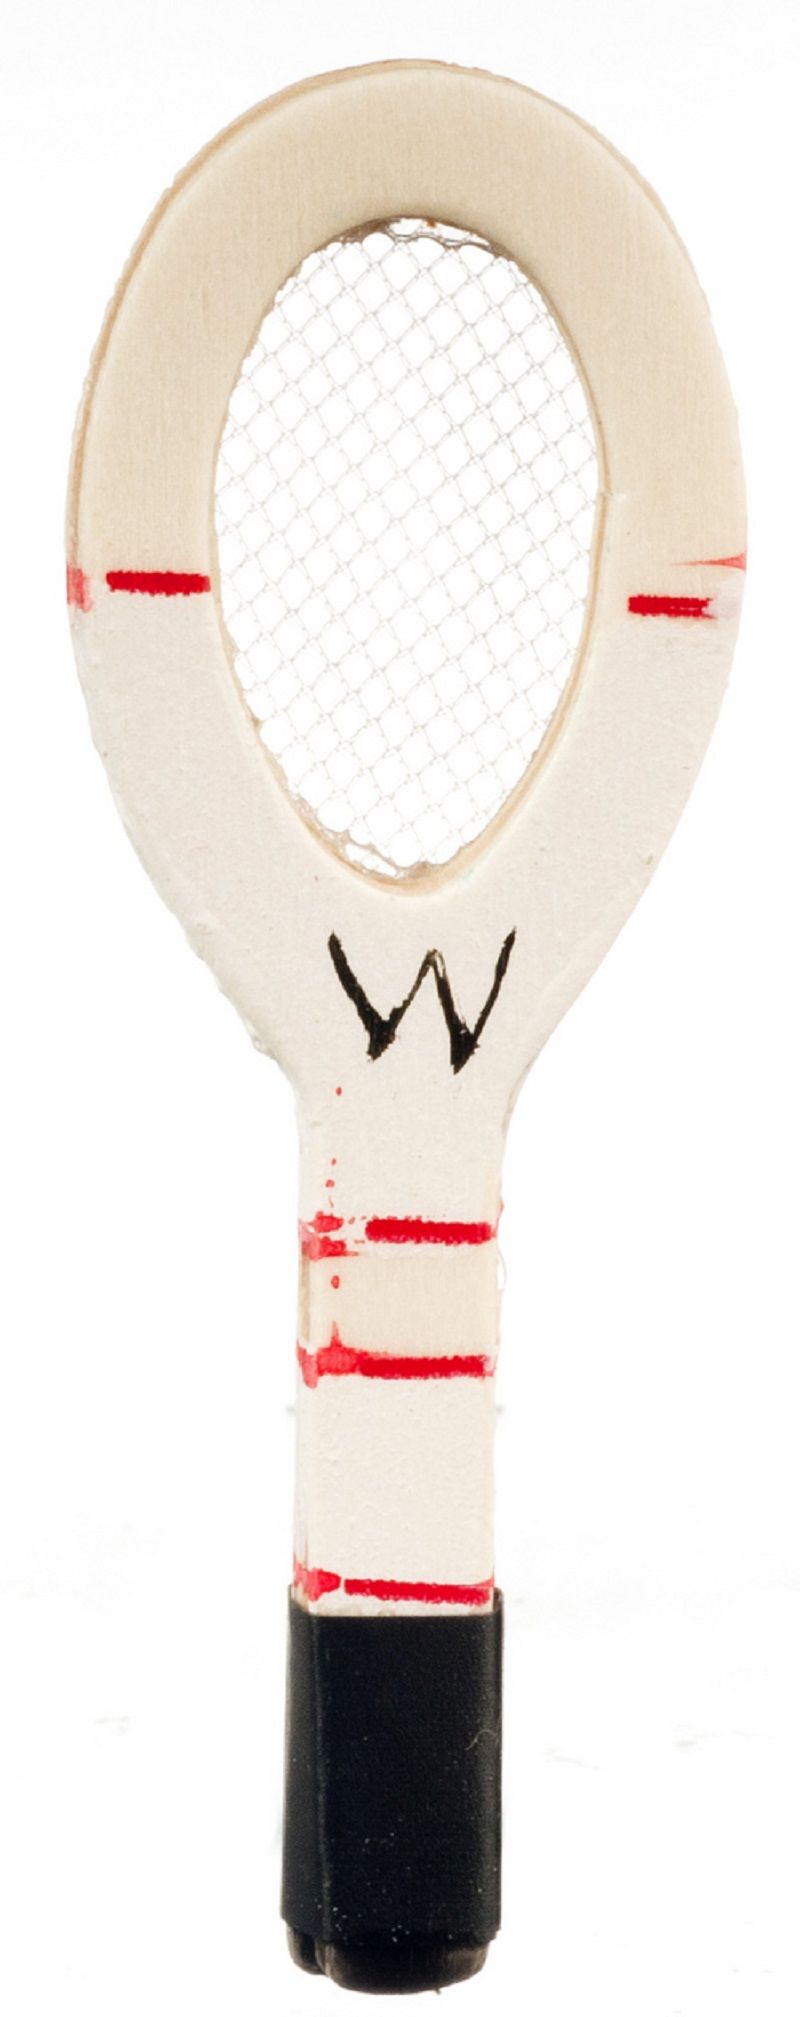 Wood Handpainted Tennis Racket